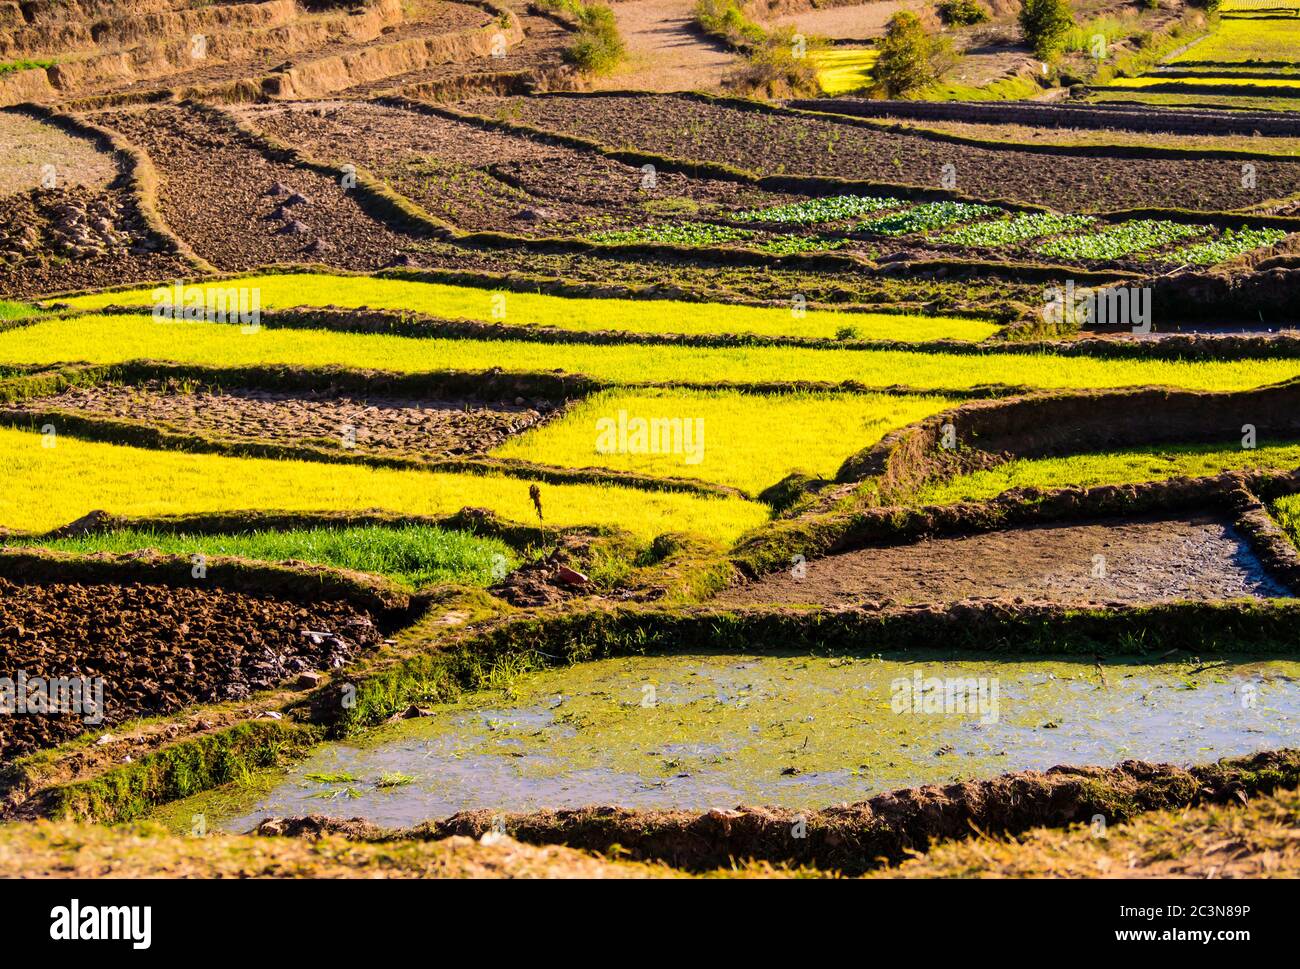 Paesaggio impressionante nelle alture del Madagascar, con risaie terrazzate in molteplici sfumature di verde Foto Stock